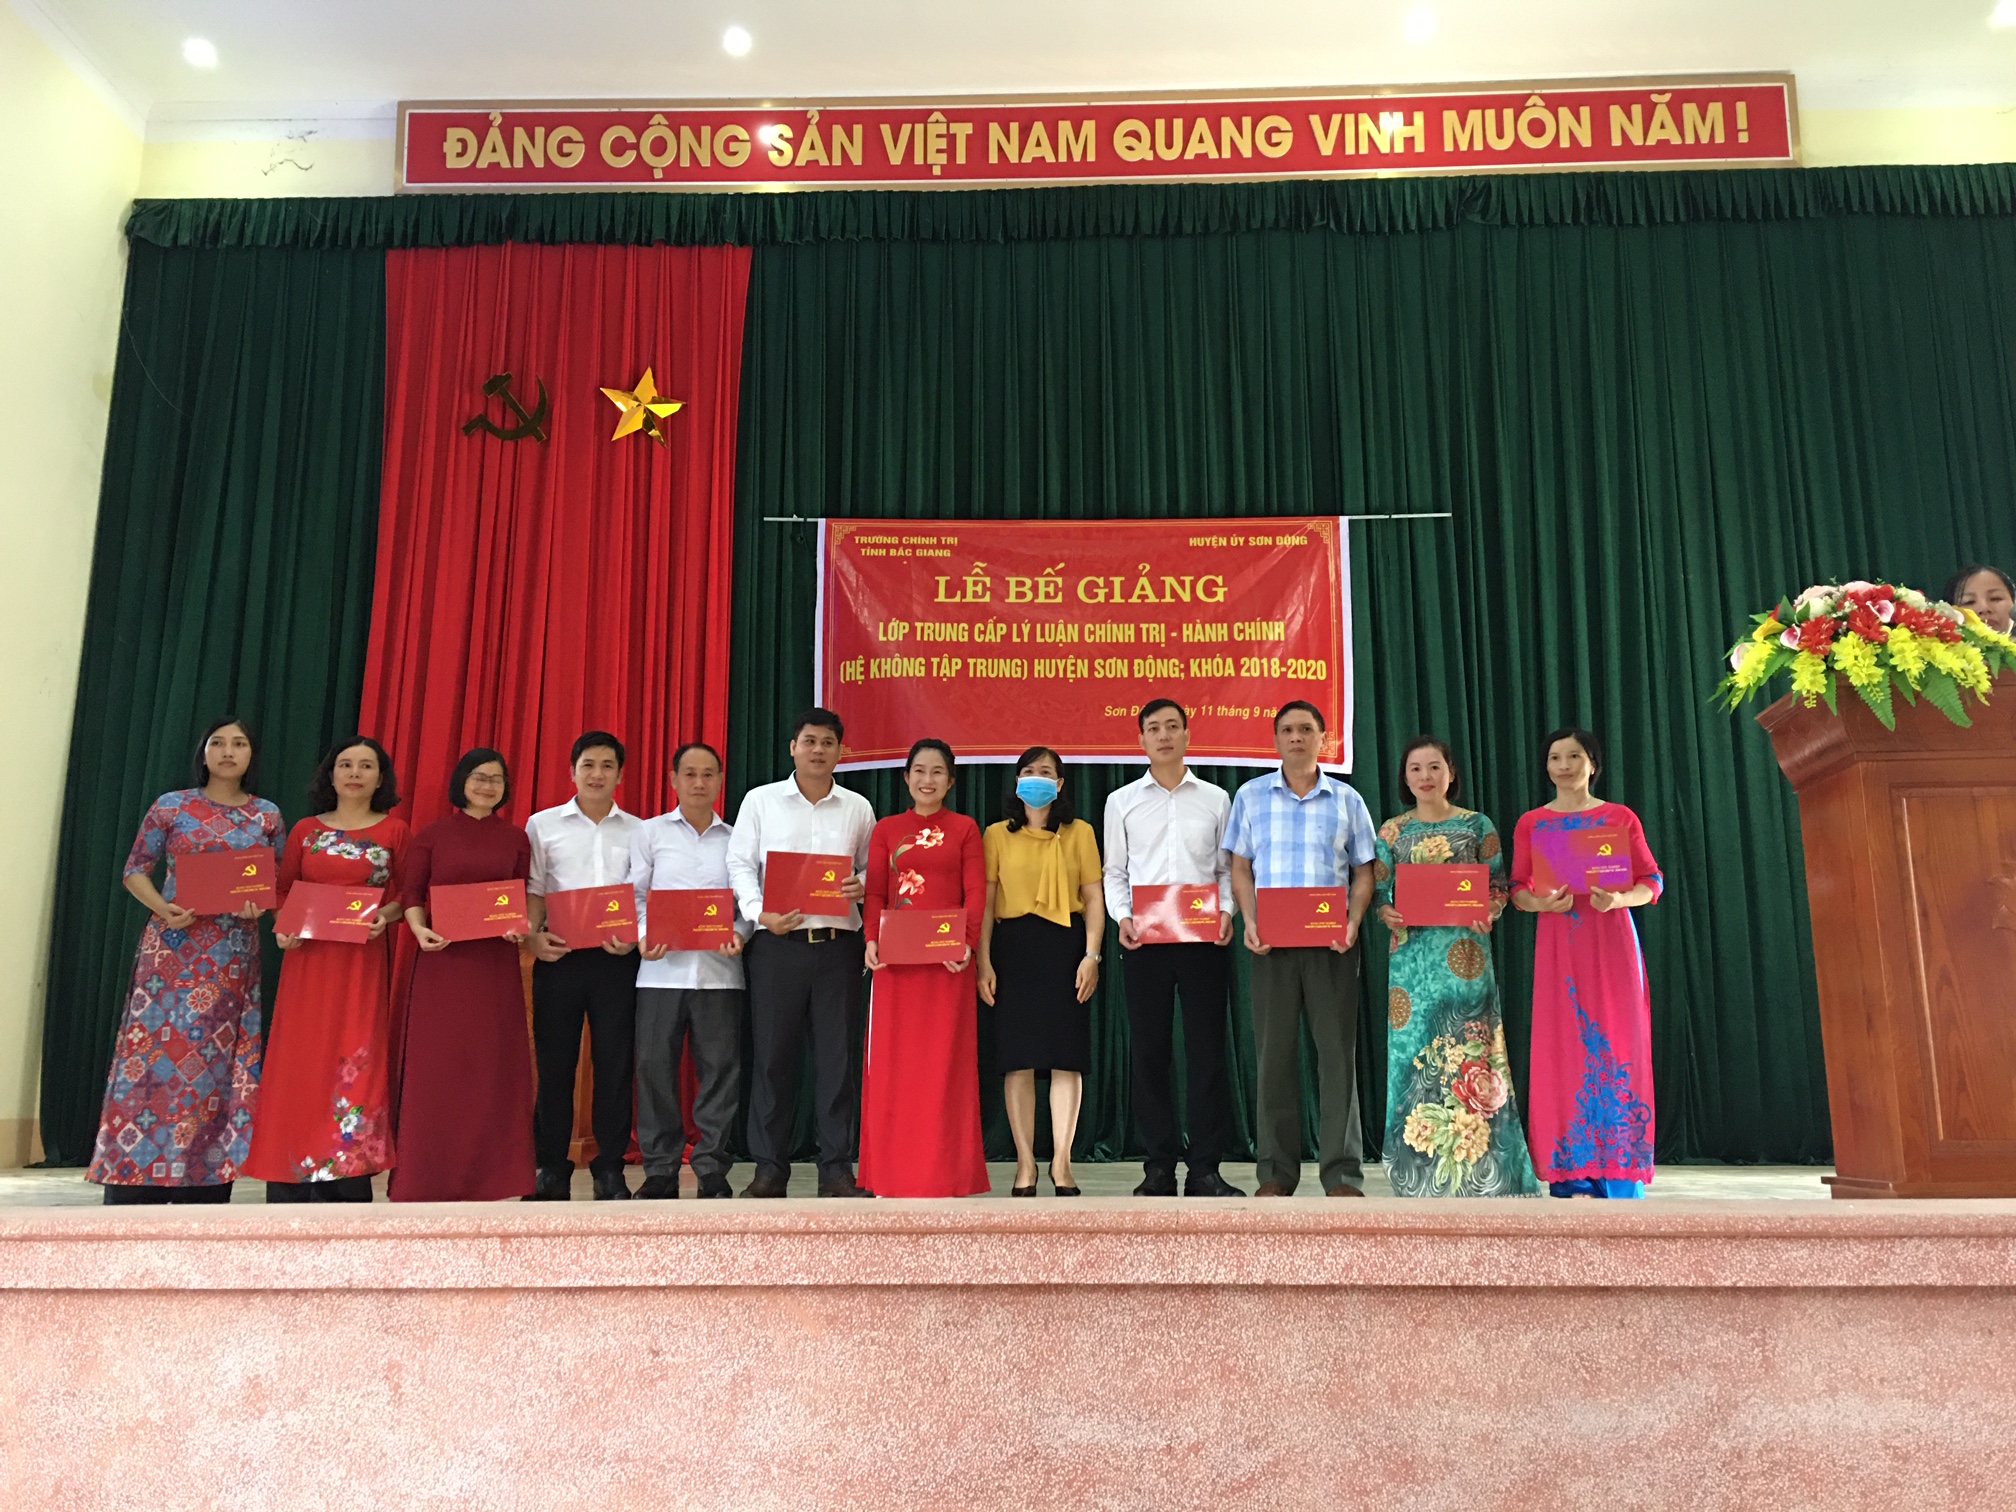 Lễ bế giảng lớp Trung cấp Lý luận chính trị - Hành chính không tập trung huyện Sơn Động, khóa học: 2018-2020